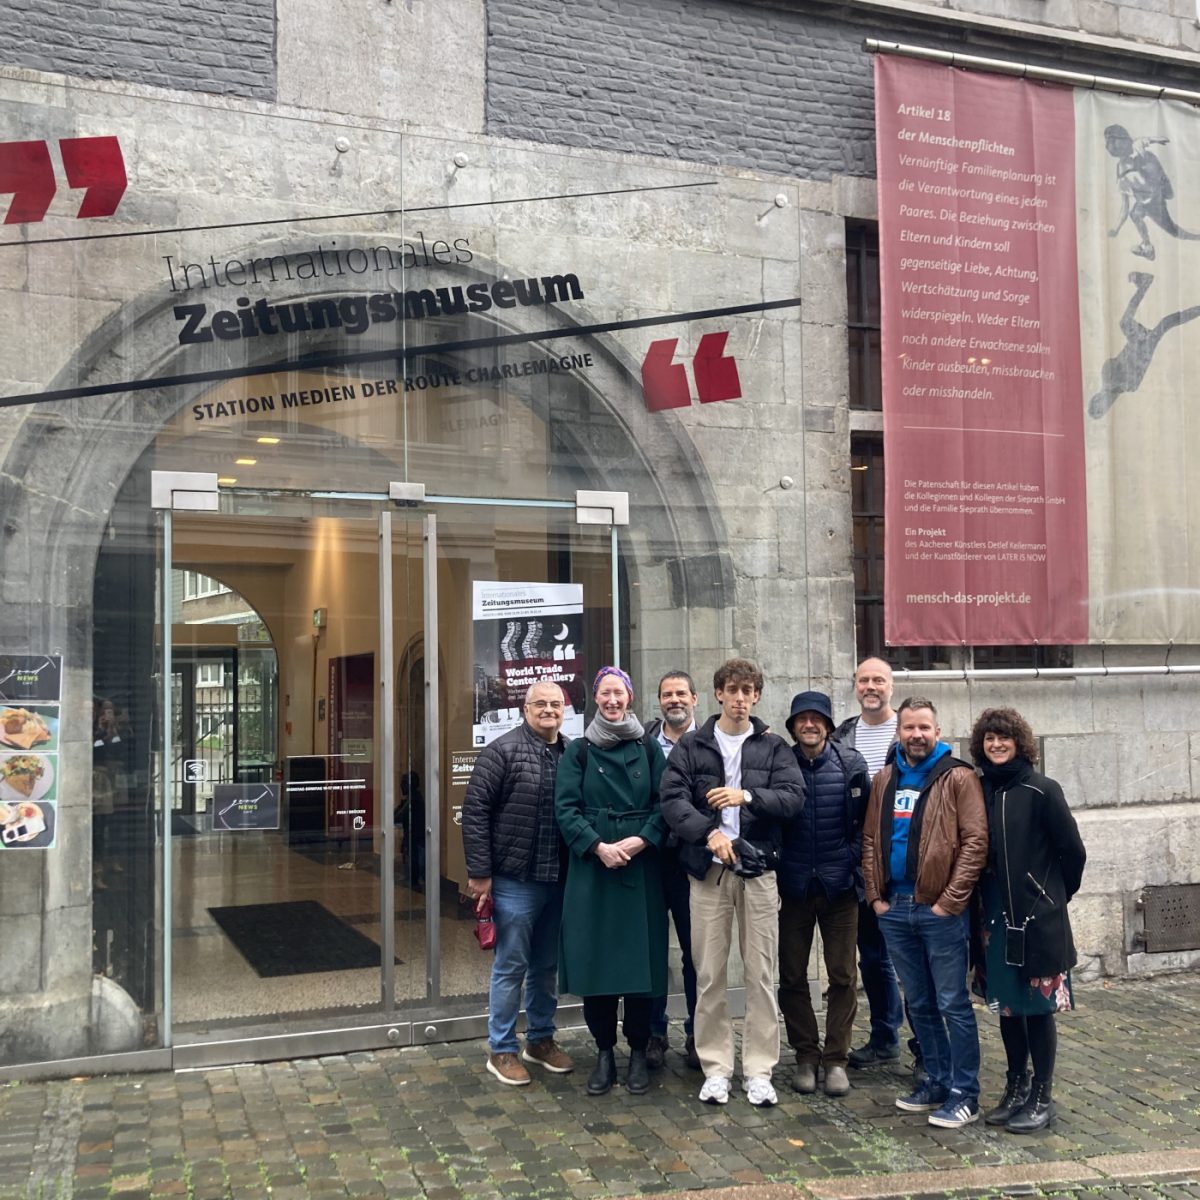 Lehrergruppe vor dem Internationalen zeitungmuseum in Aachen